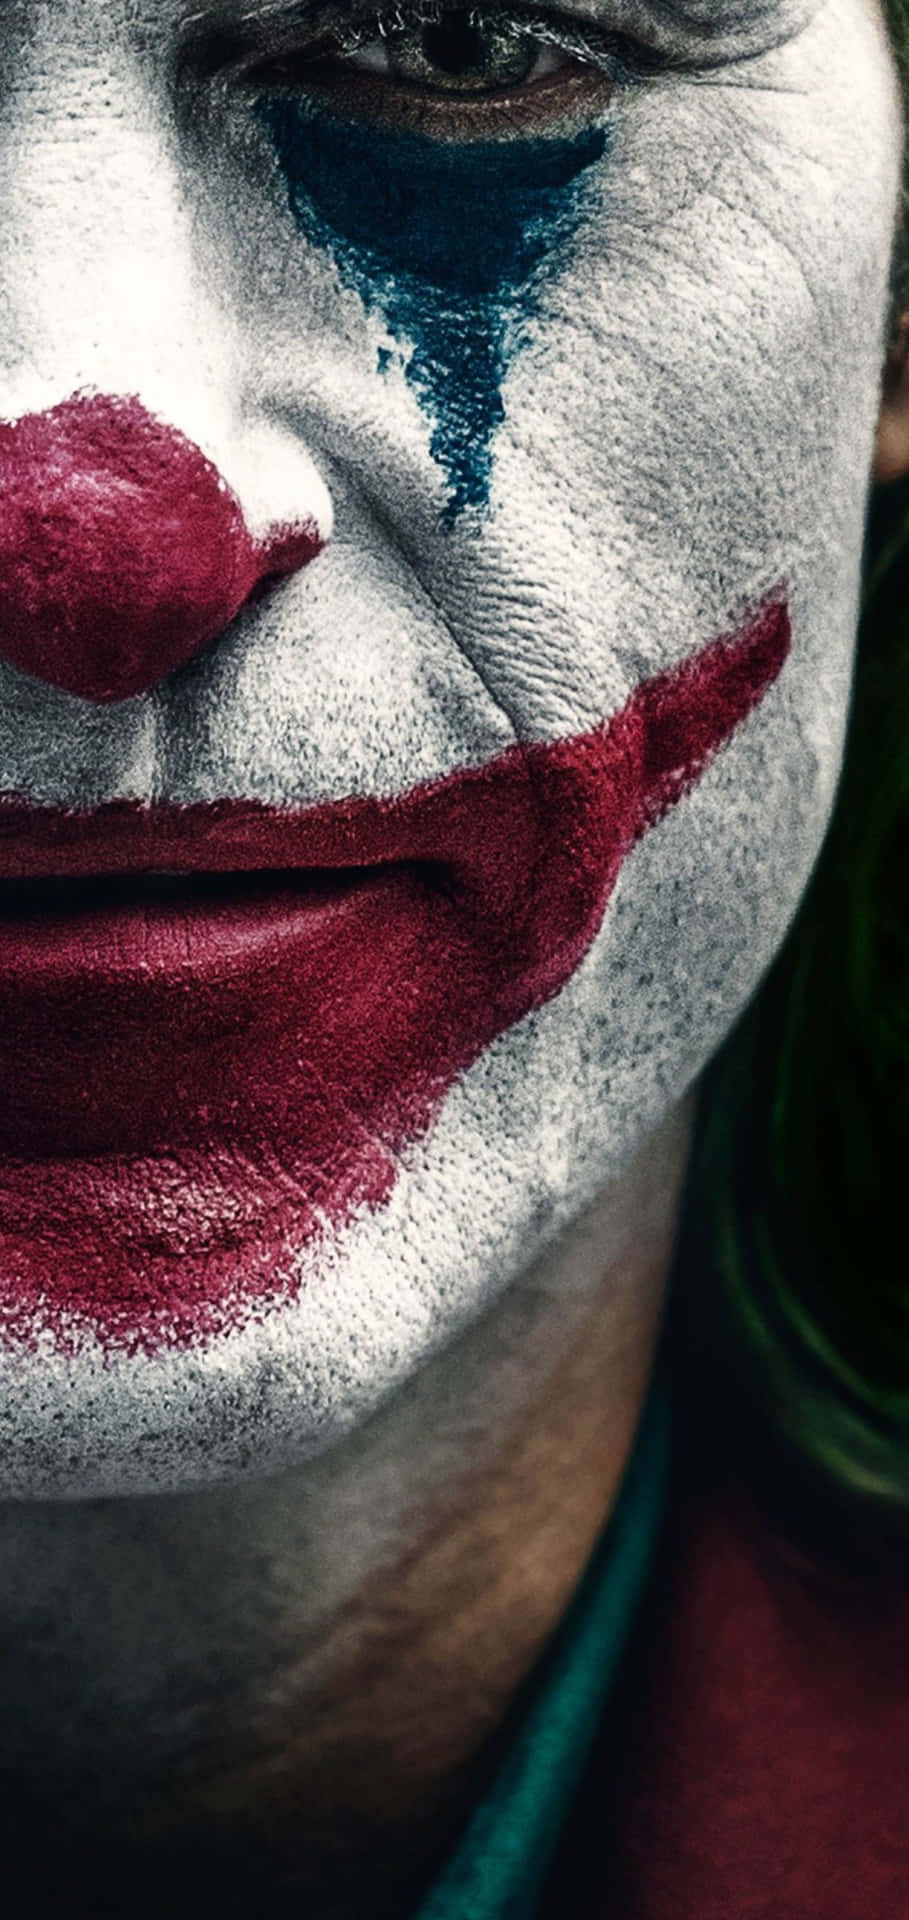 Ilpiù Grande Trucco Che Il Joker Abbia Mai Fatto È Farci Credere Tutti Che Lui Fosse Il Cattivo. Sfondo